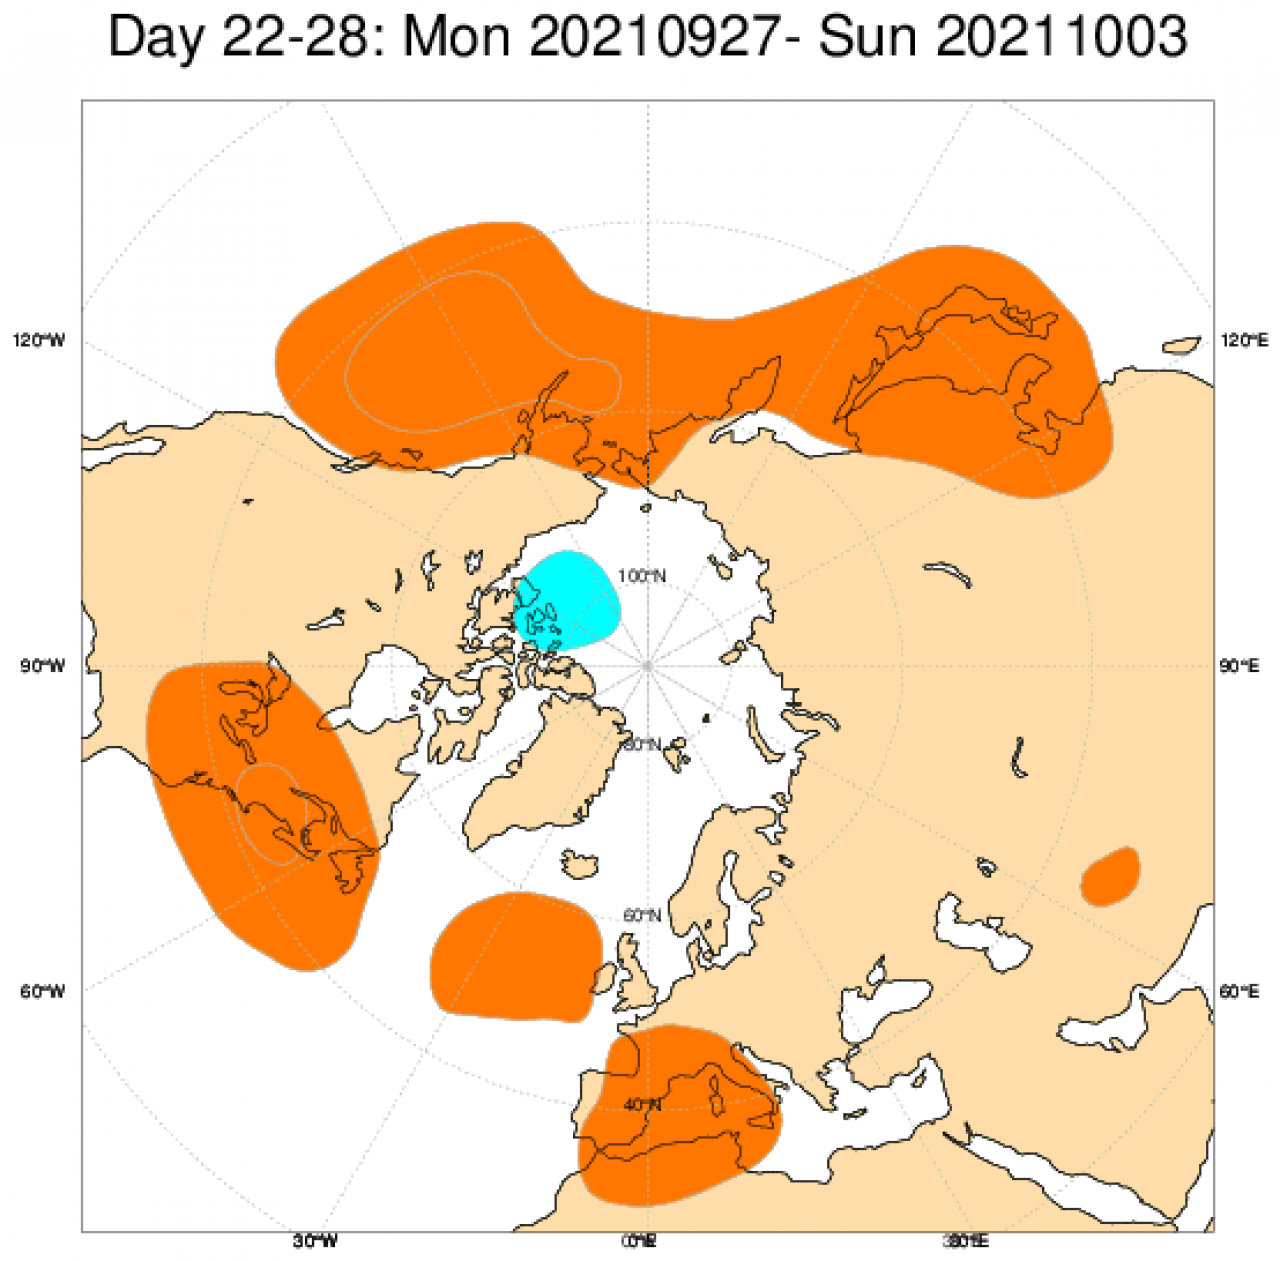 Le anomalie di pressione e geopotenziale secondo il modello ECMWF mediate nel periodo 27 settembre - 3 ottobre